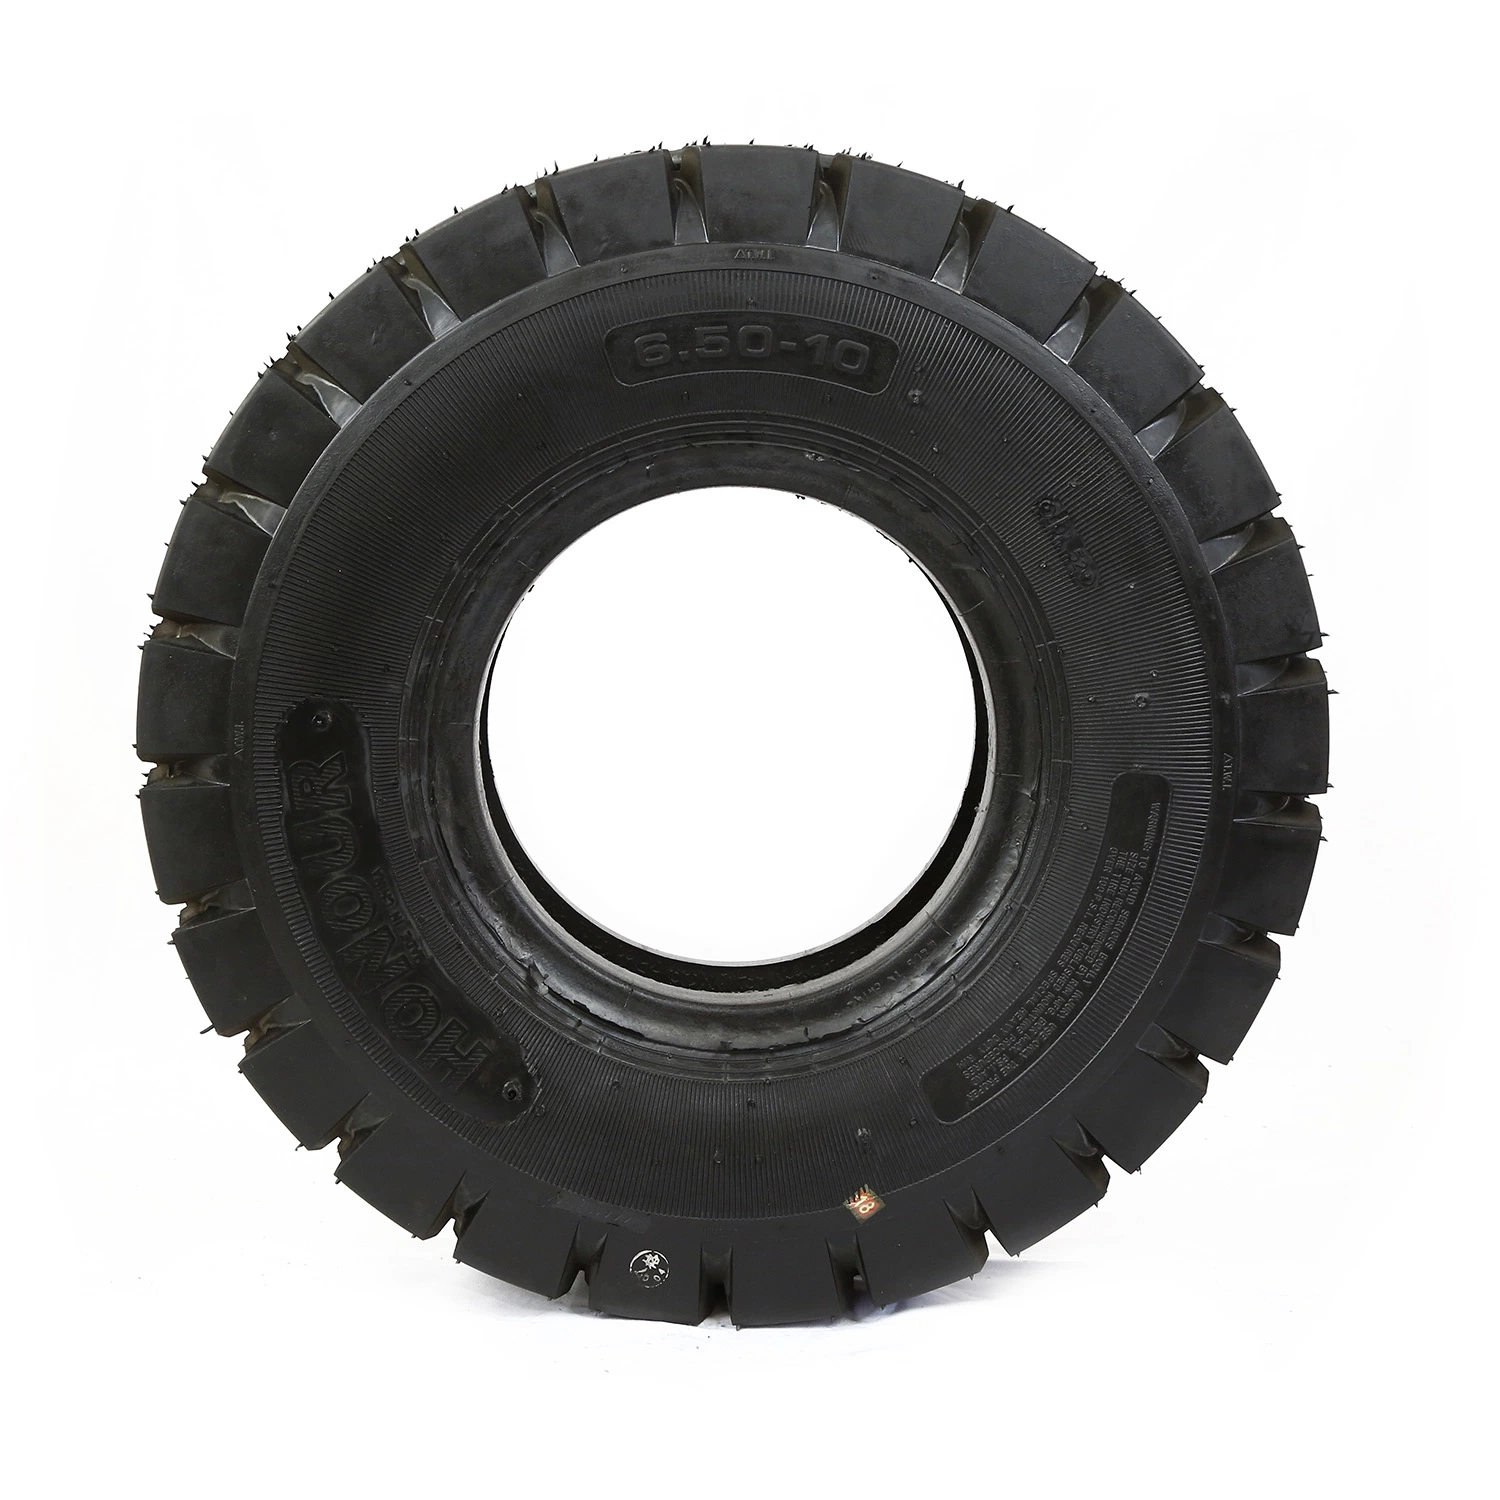 Mineração de polarização da tampa do tubo pneumático Pressione a presilha sólido 7,00-12 8.25-12 Pneu industrial de carros